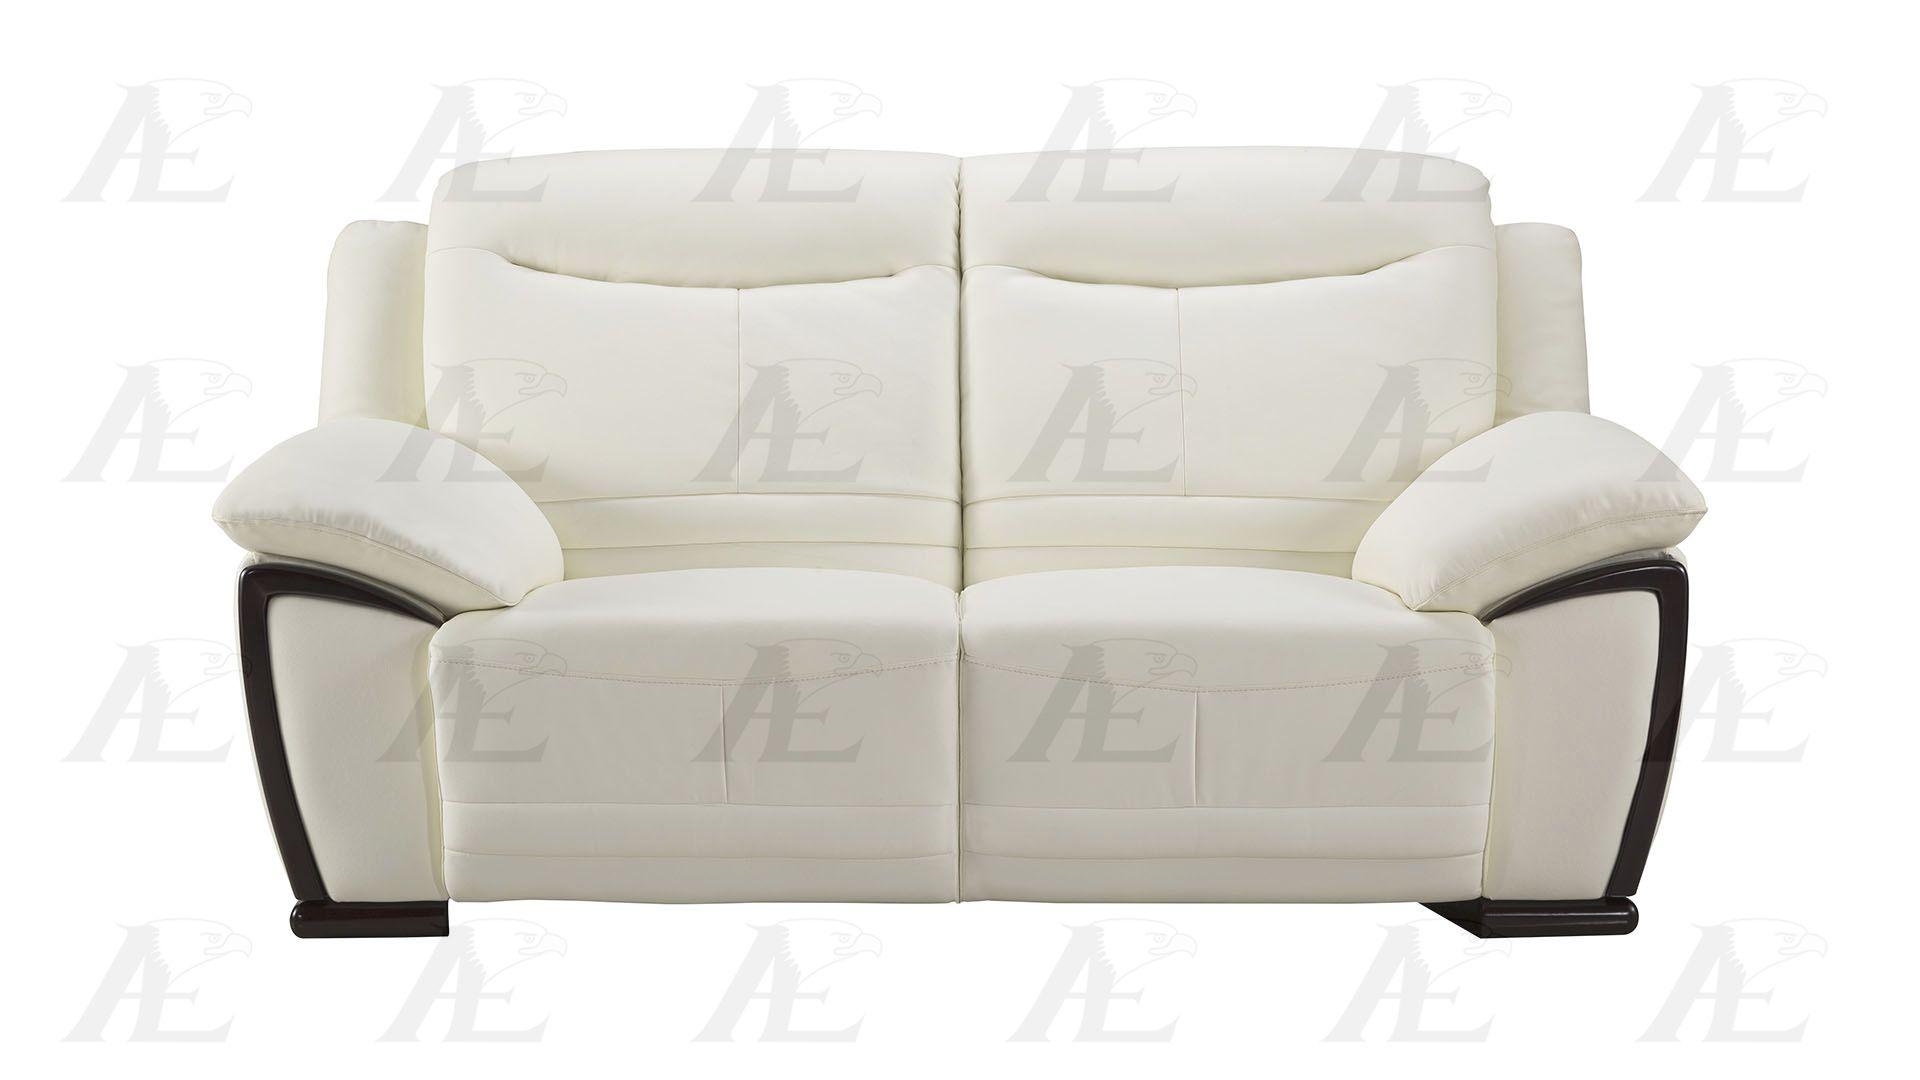 

    
American Eagle Furniture EK-B308-W Sofa Loveseat and Chair Set White EK-B308-W Set-3
